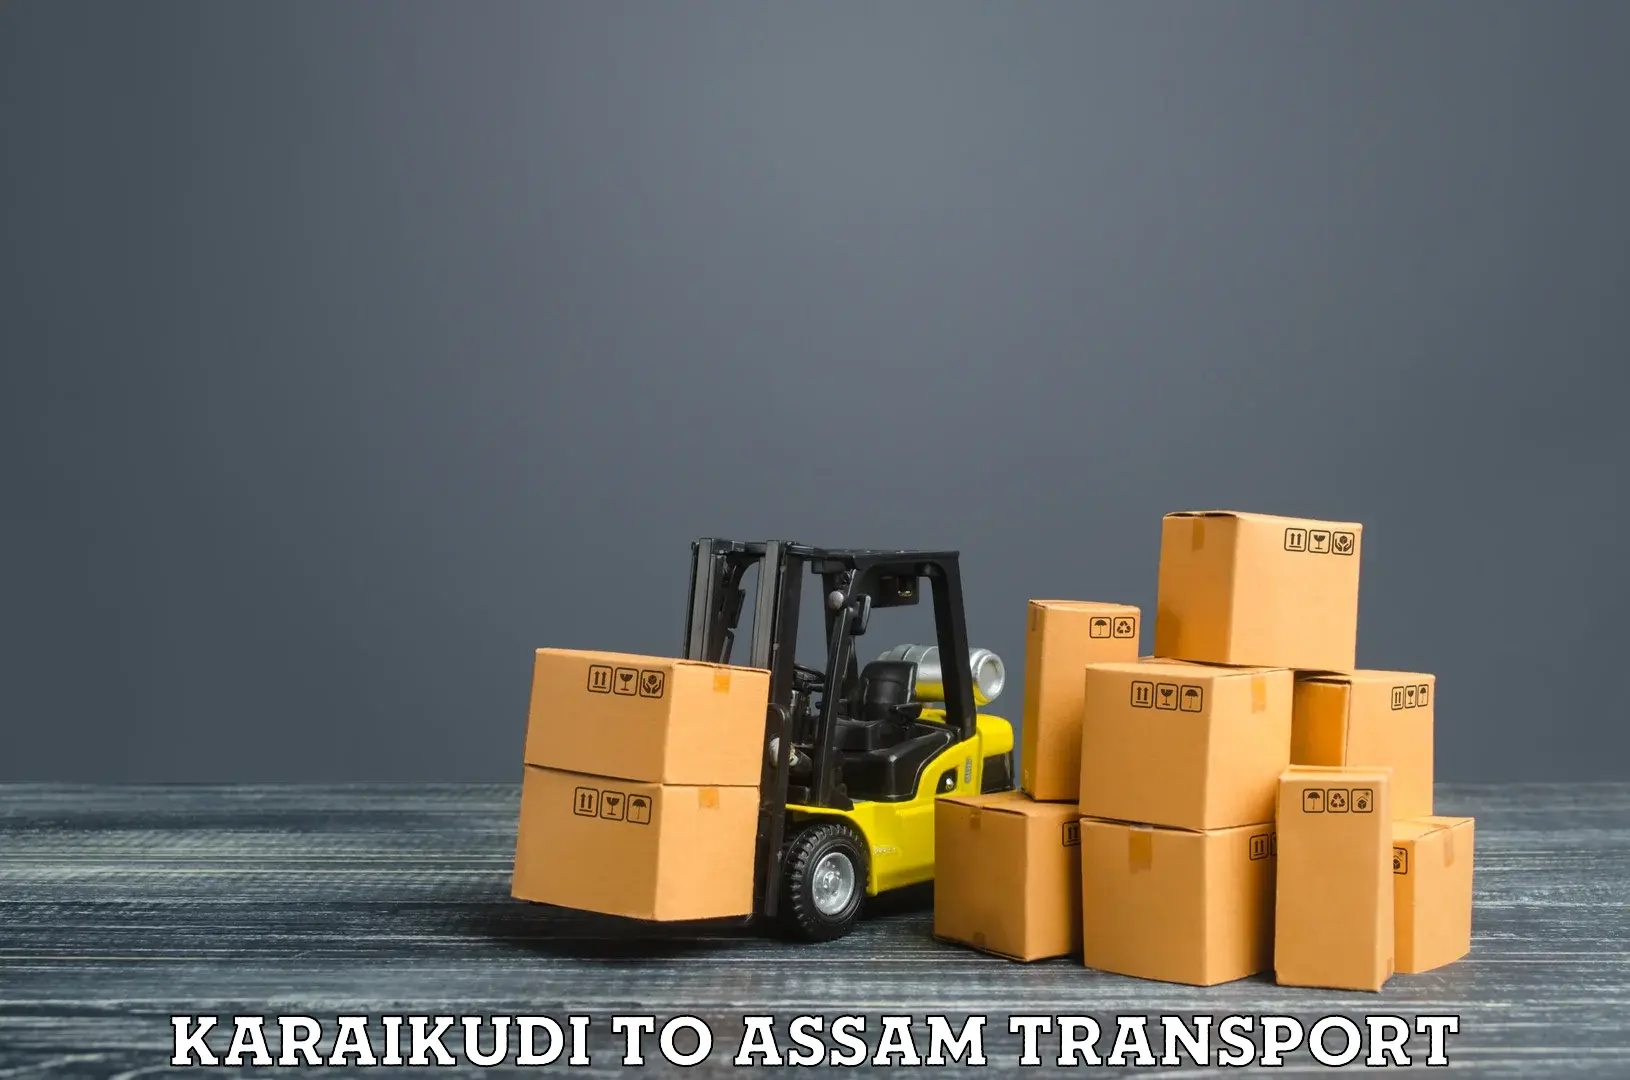 Cargo transport services Karaikudi to Mariani